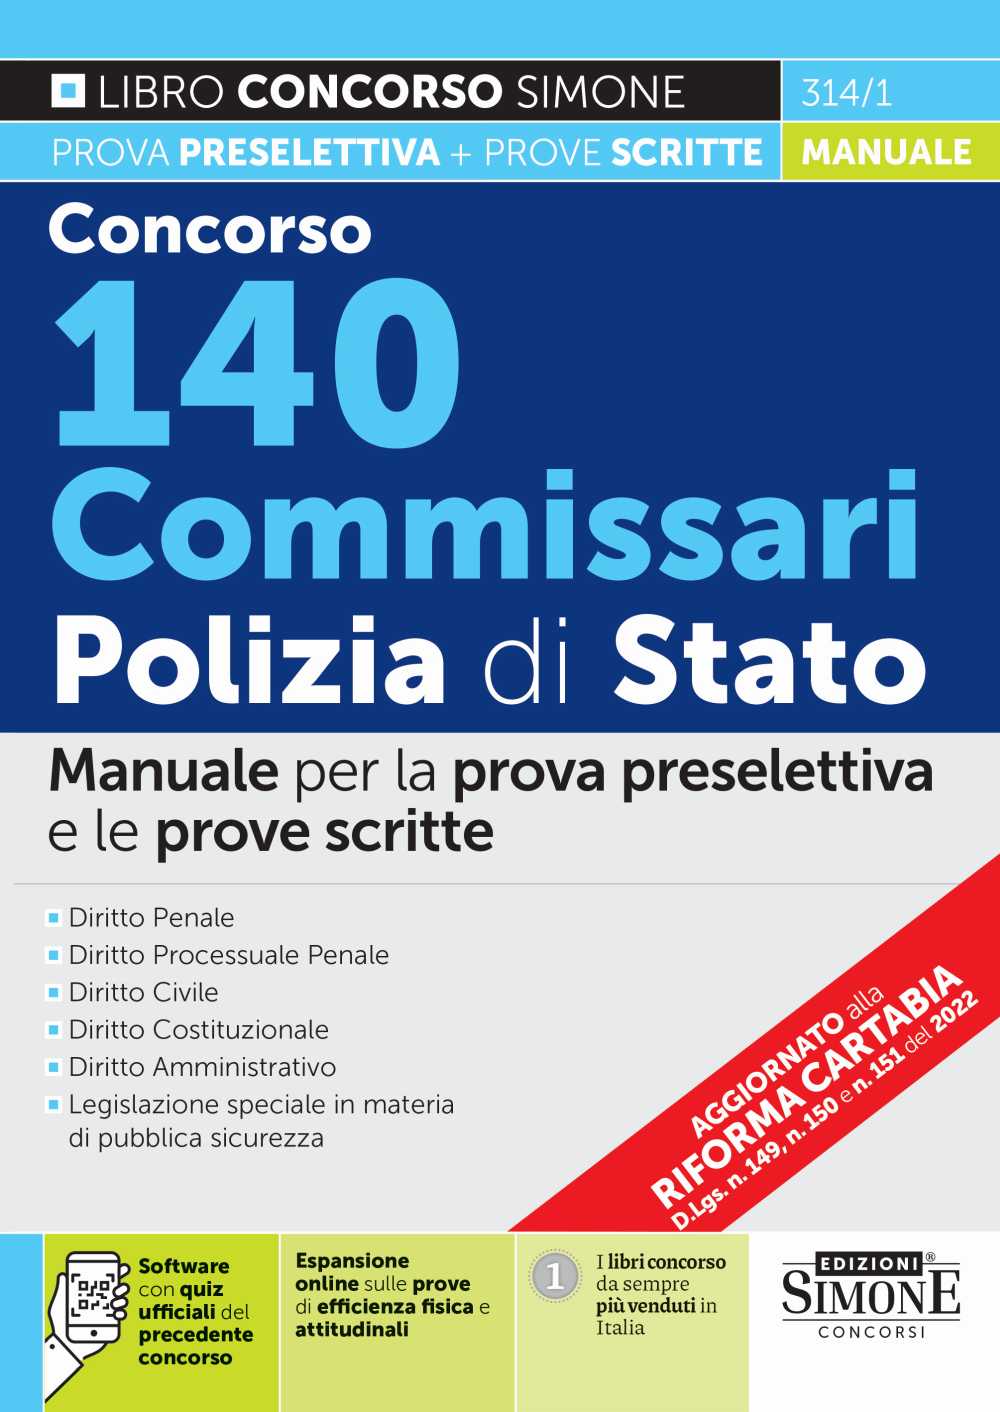 Concorso 140 Commissari Polizia di Stato - Manuale - 314/1